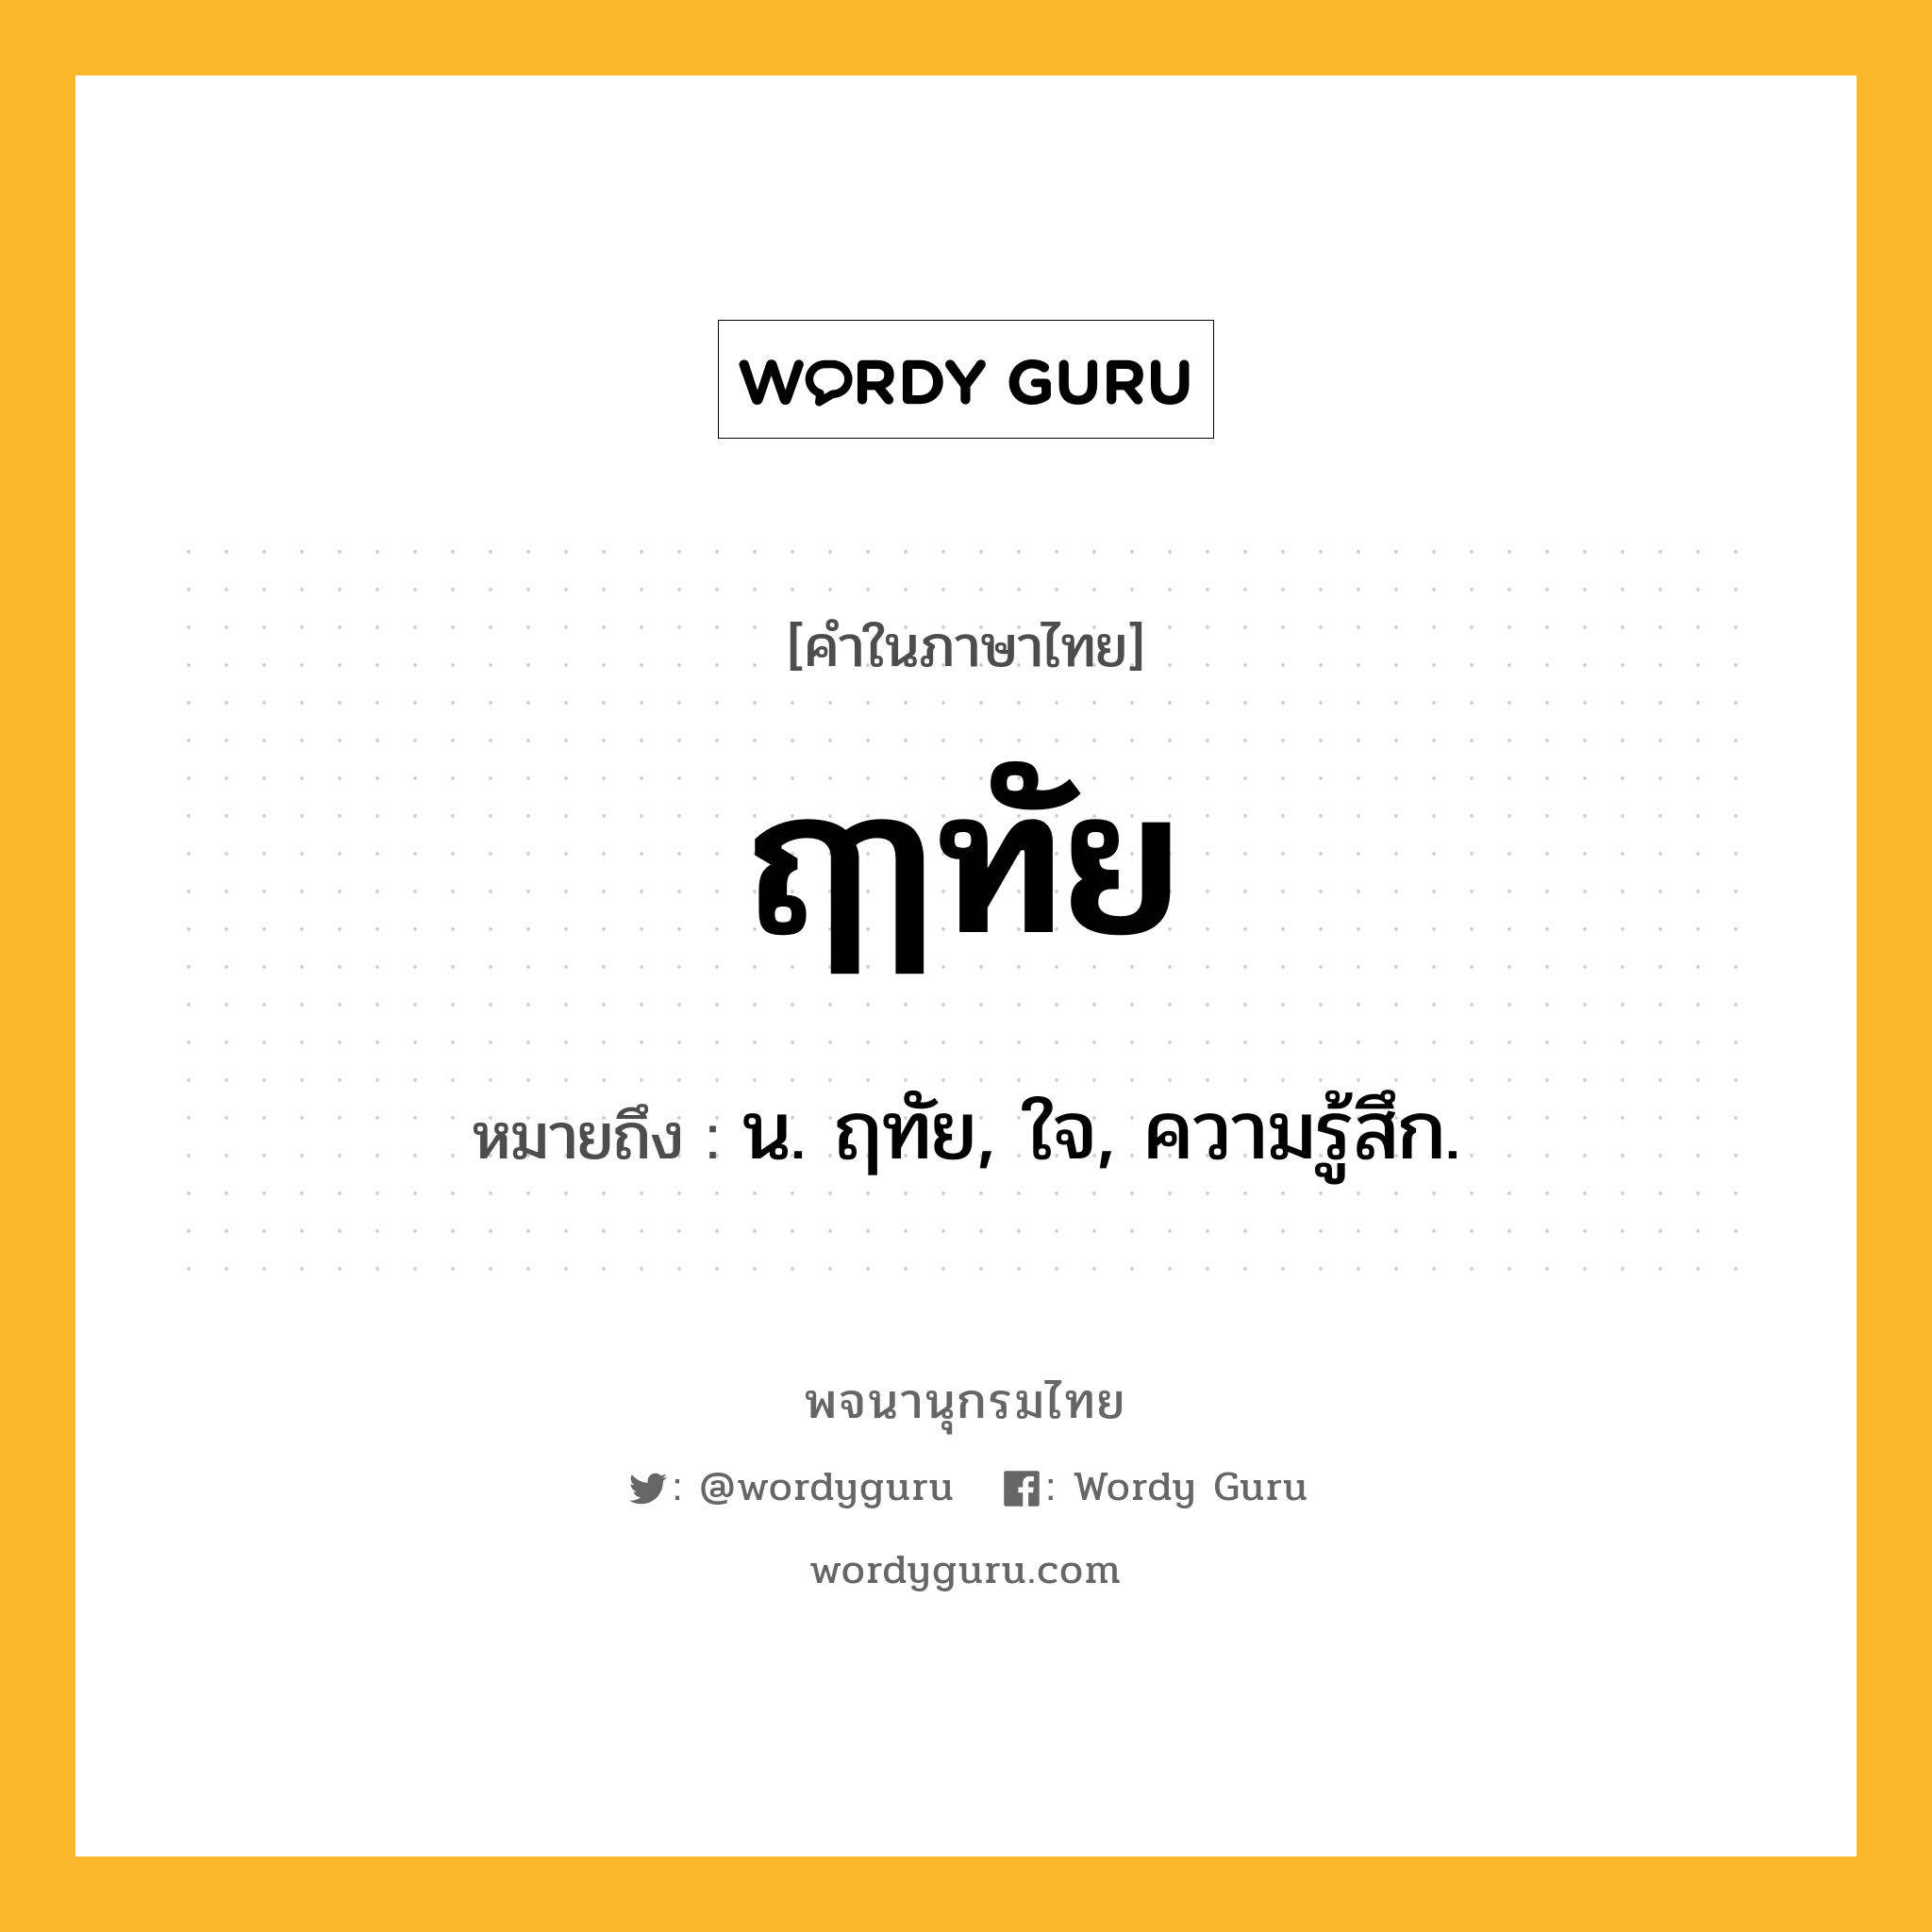 ฤๅทัย ความหมาย หมายถึงอะไร?, คำในภาษาไทย ฤๅทัย หมายถึง น. ฤทัย, ใจ, ความรู้สึก.